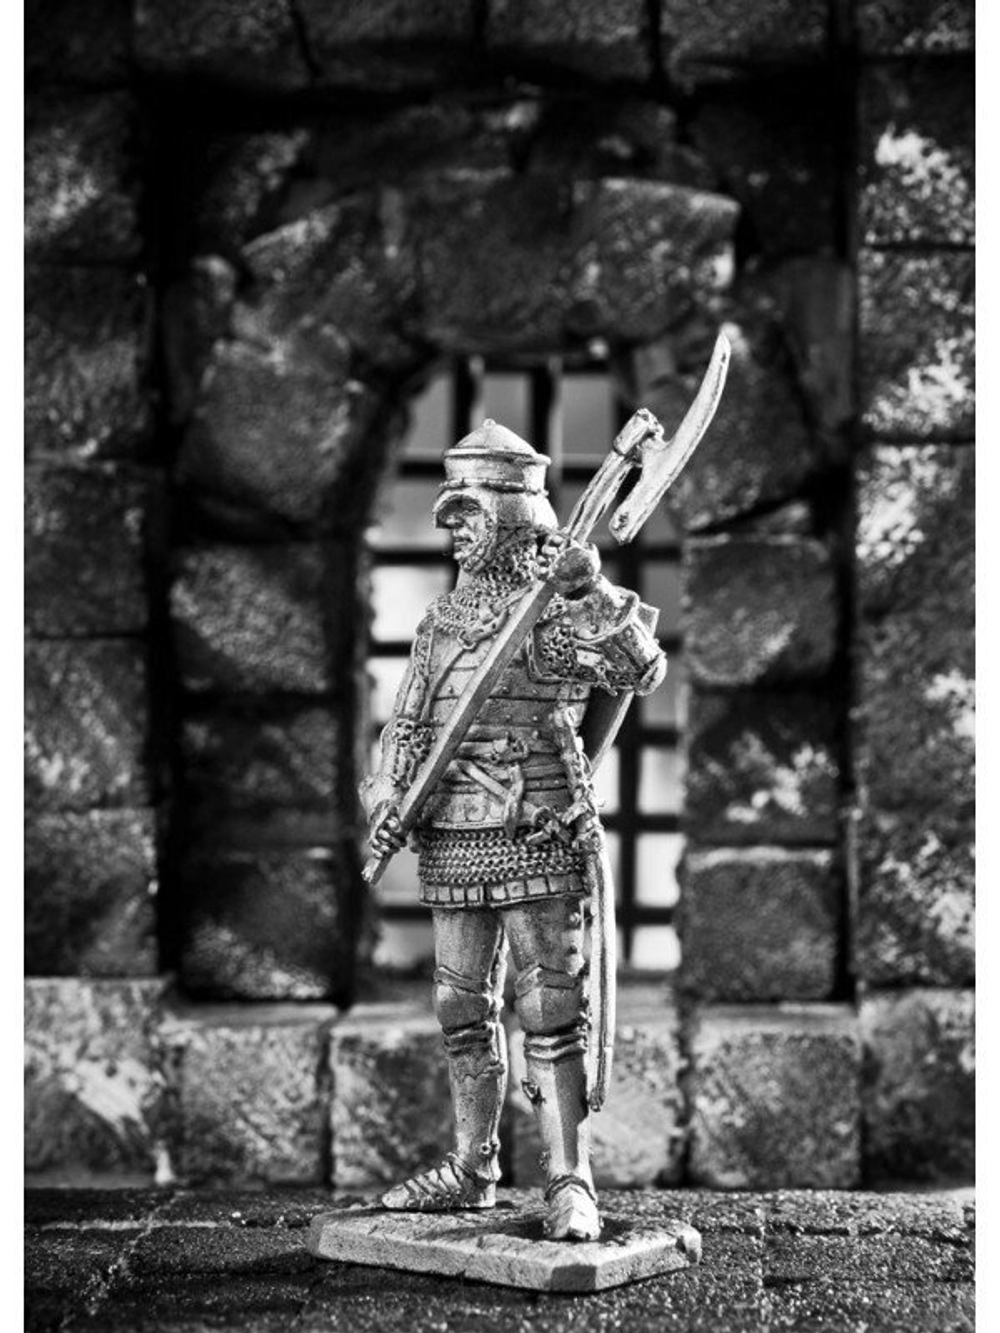 Оловянный солдатик Английский пехотинец 14 век